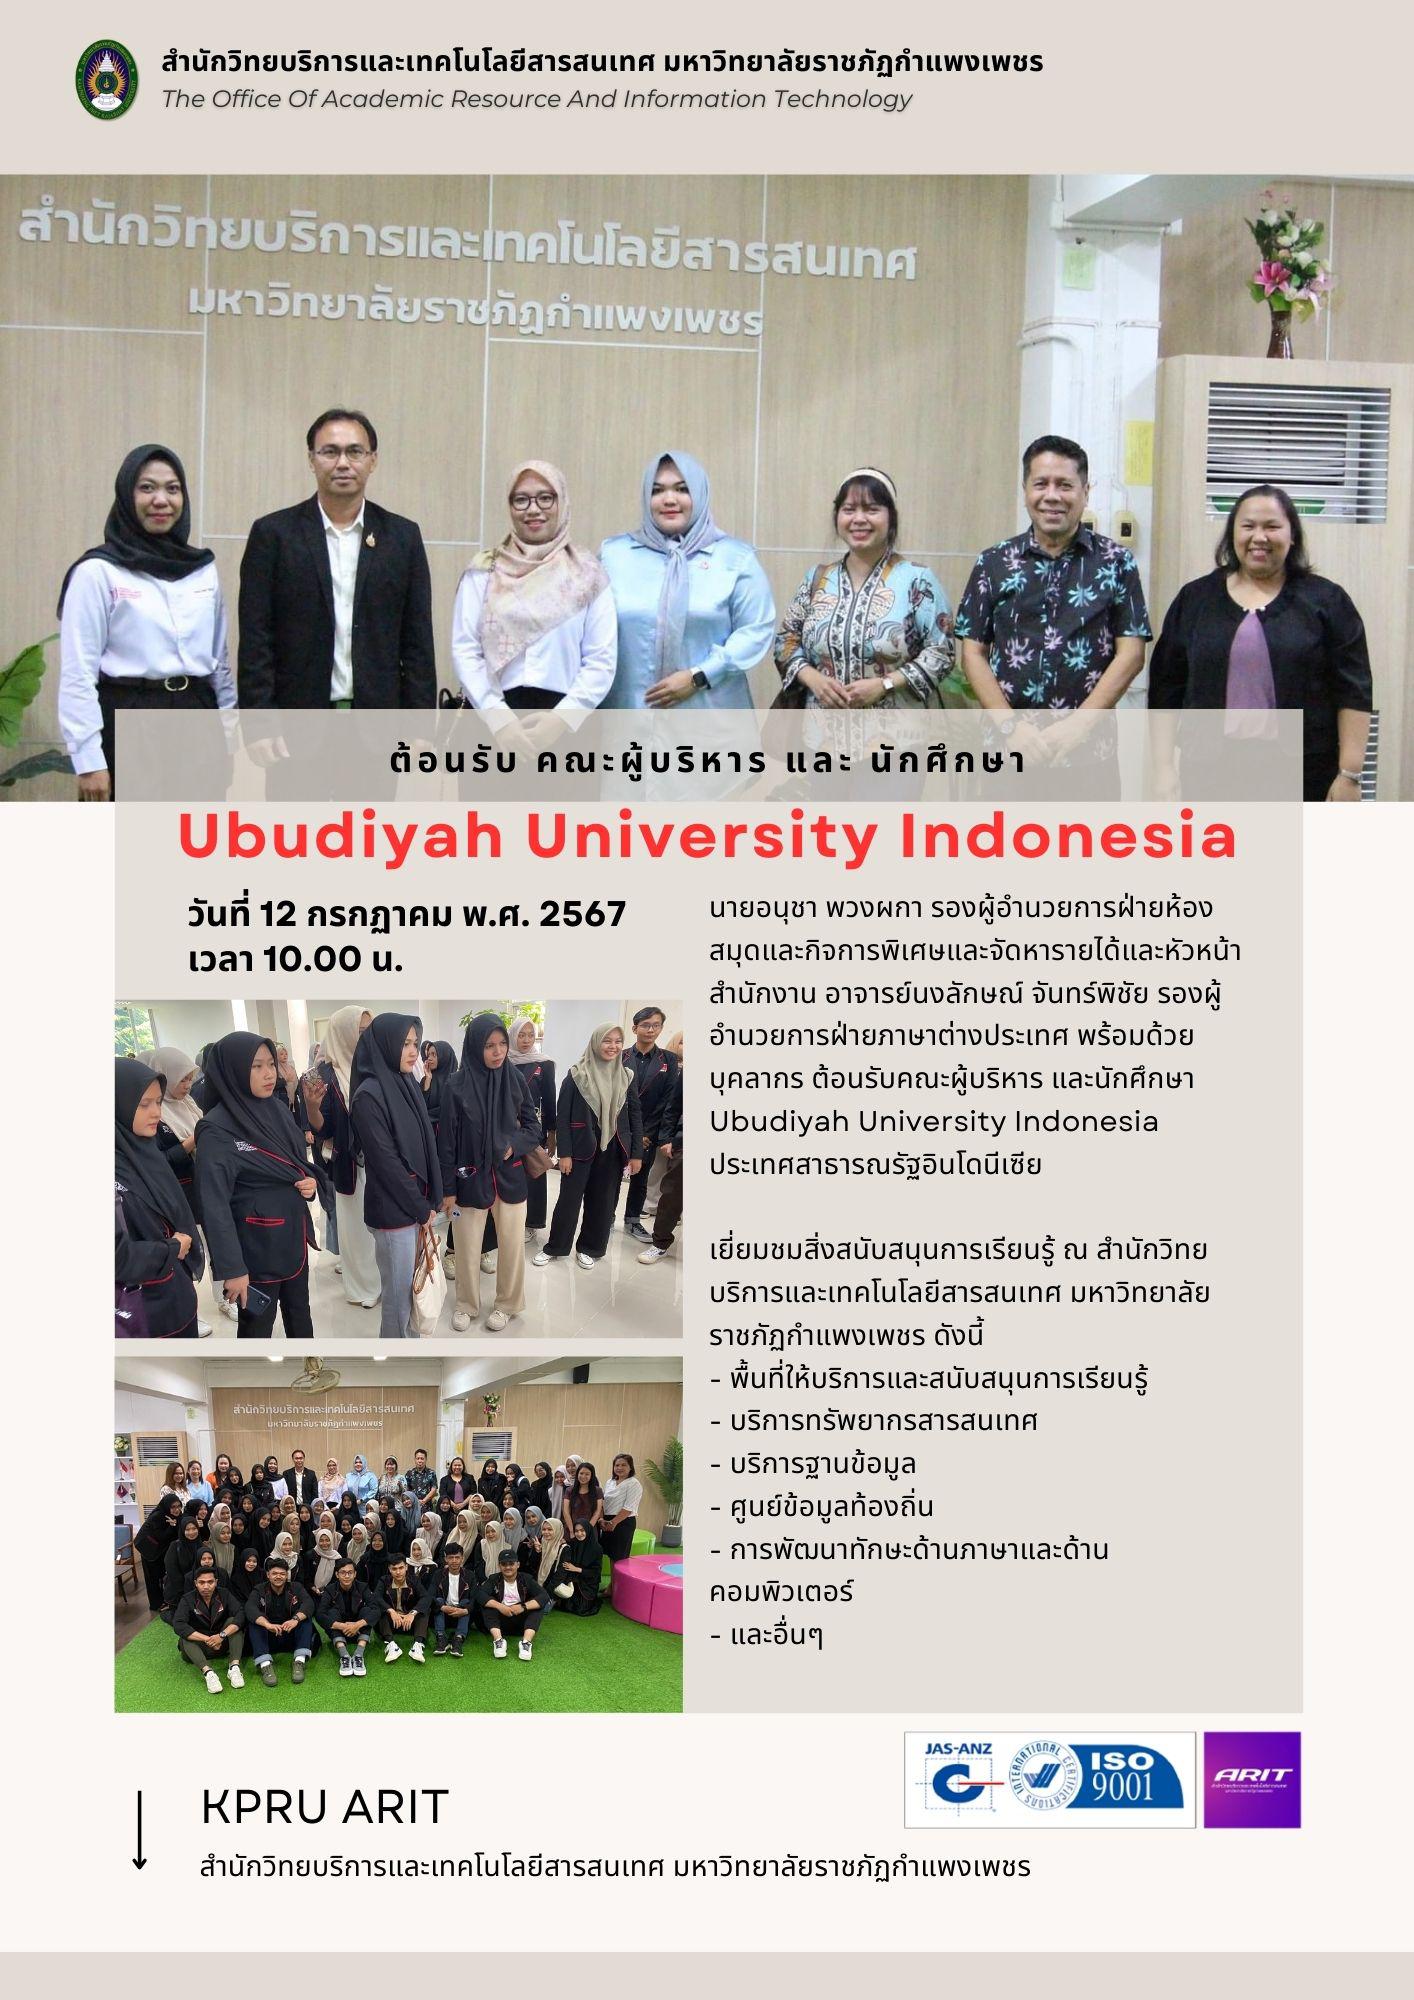 ต้อนรับคณะผู้บริหารและนักศึกษาจากมหาวิทยาลัย Ubudiyah University Indonesia ประเทศสาธารณรัฐอินโดนีเซีย